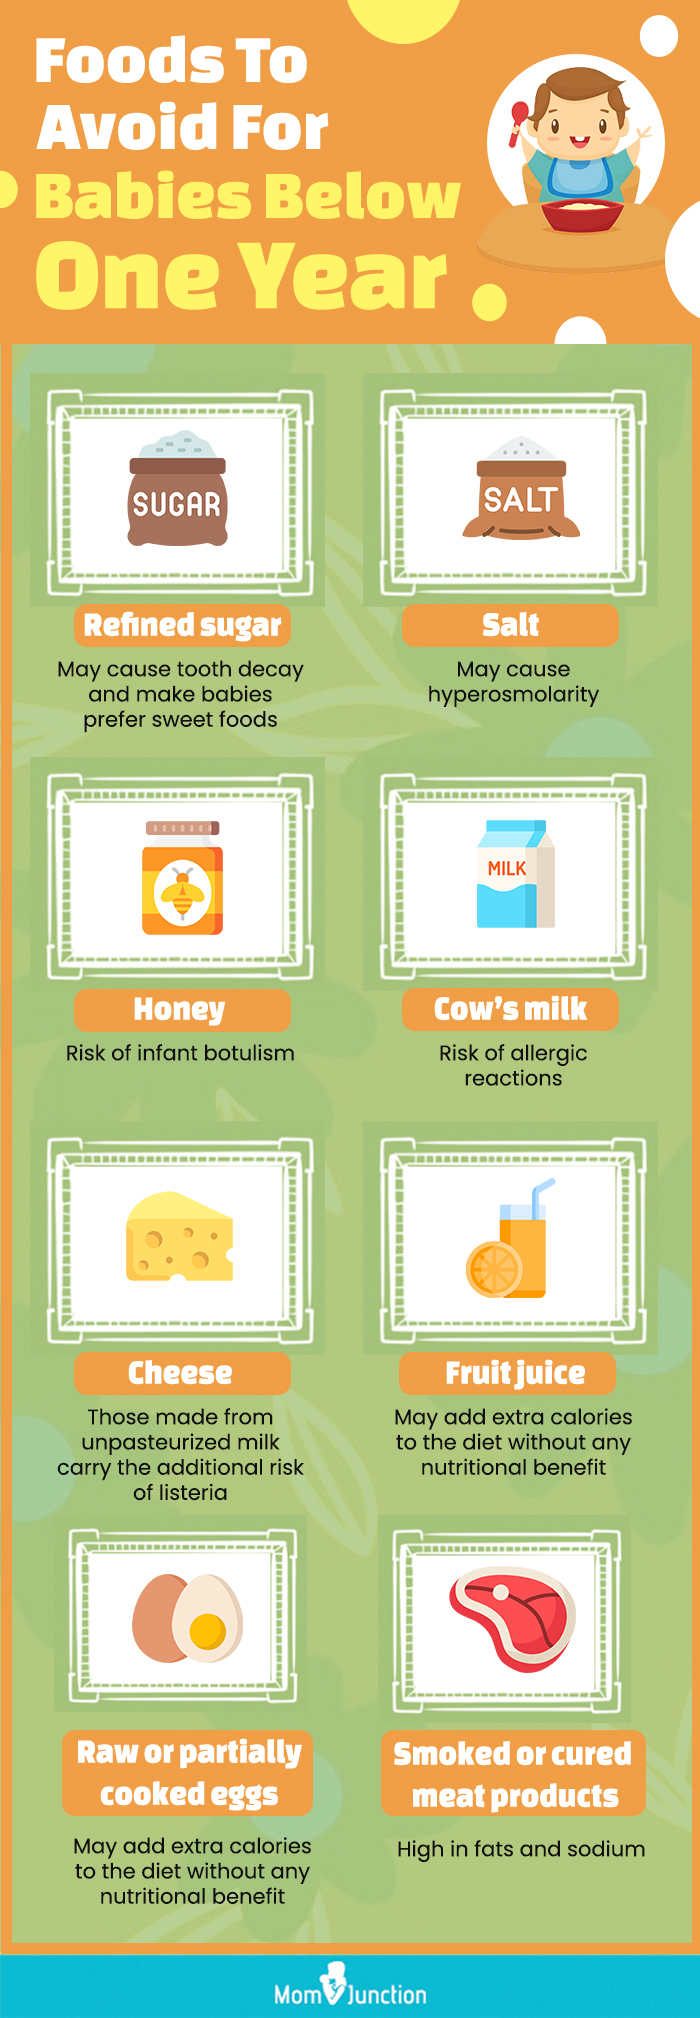 食物to avoid for babies below one year (infographic)